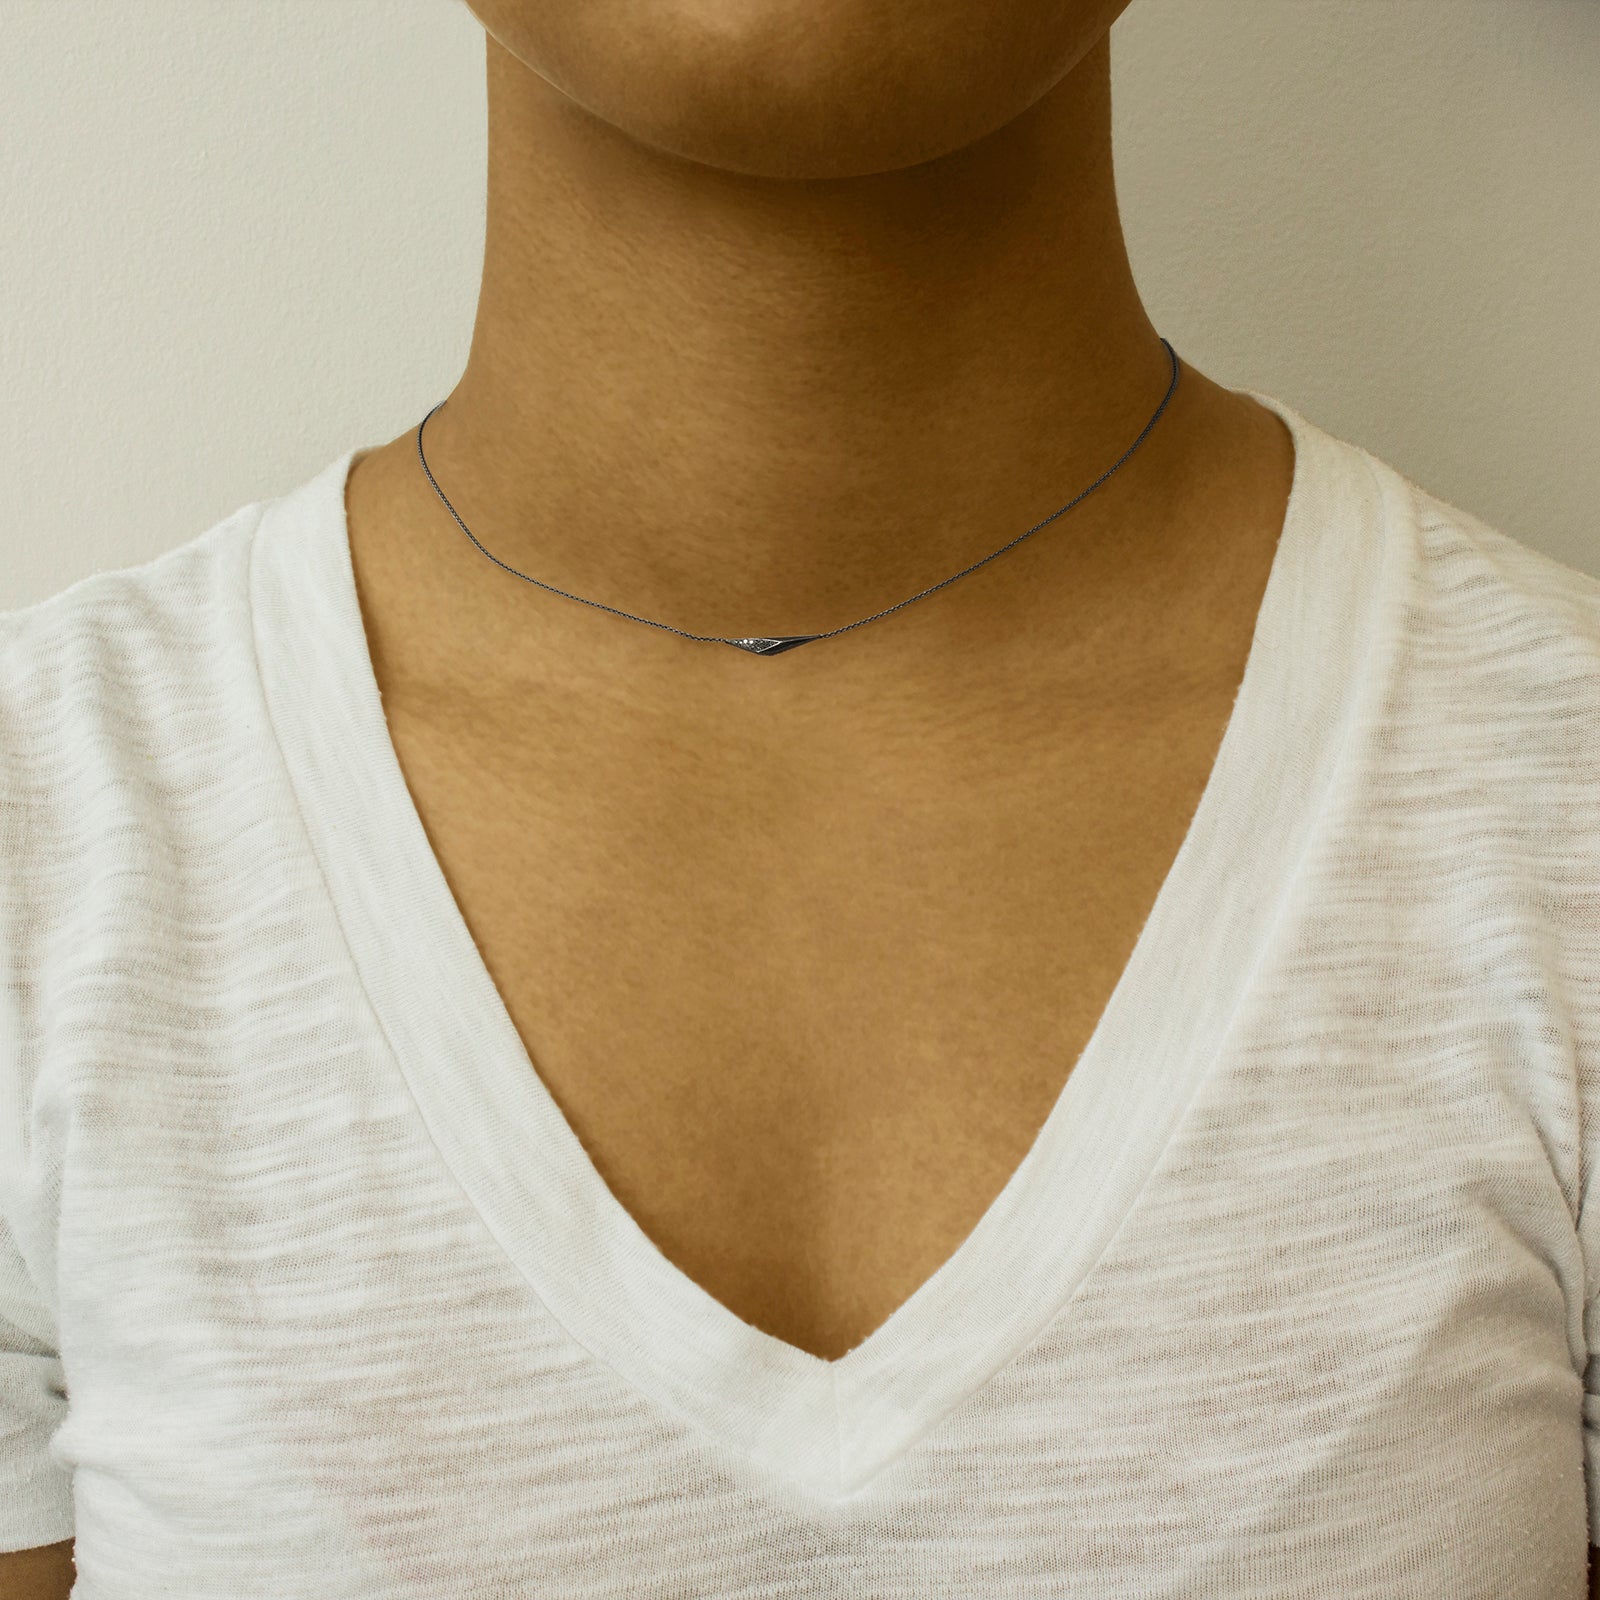  horizontal shard necklace